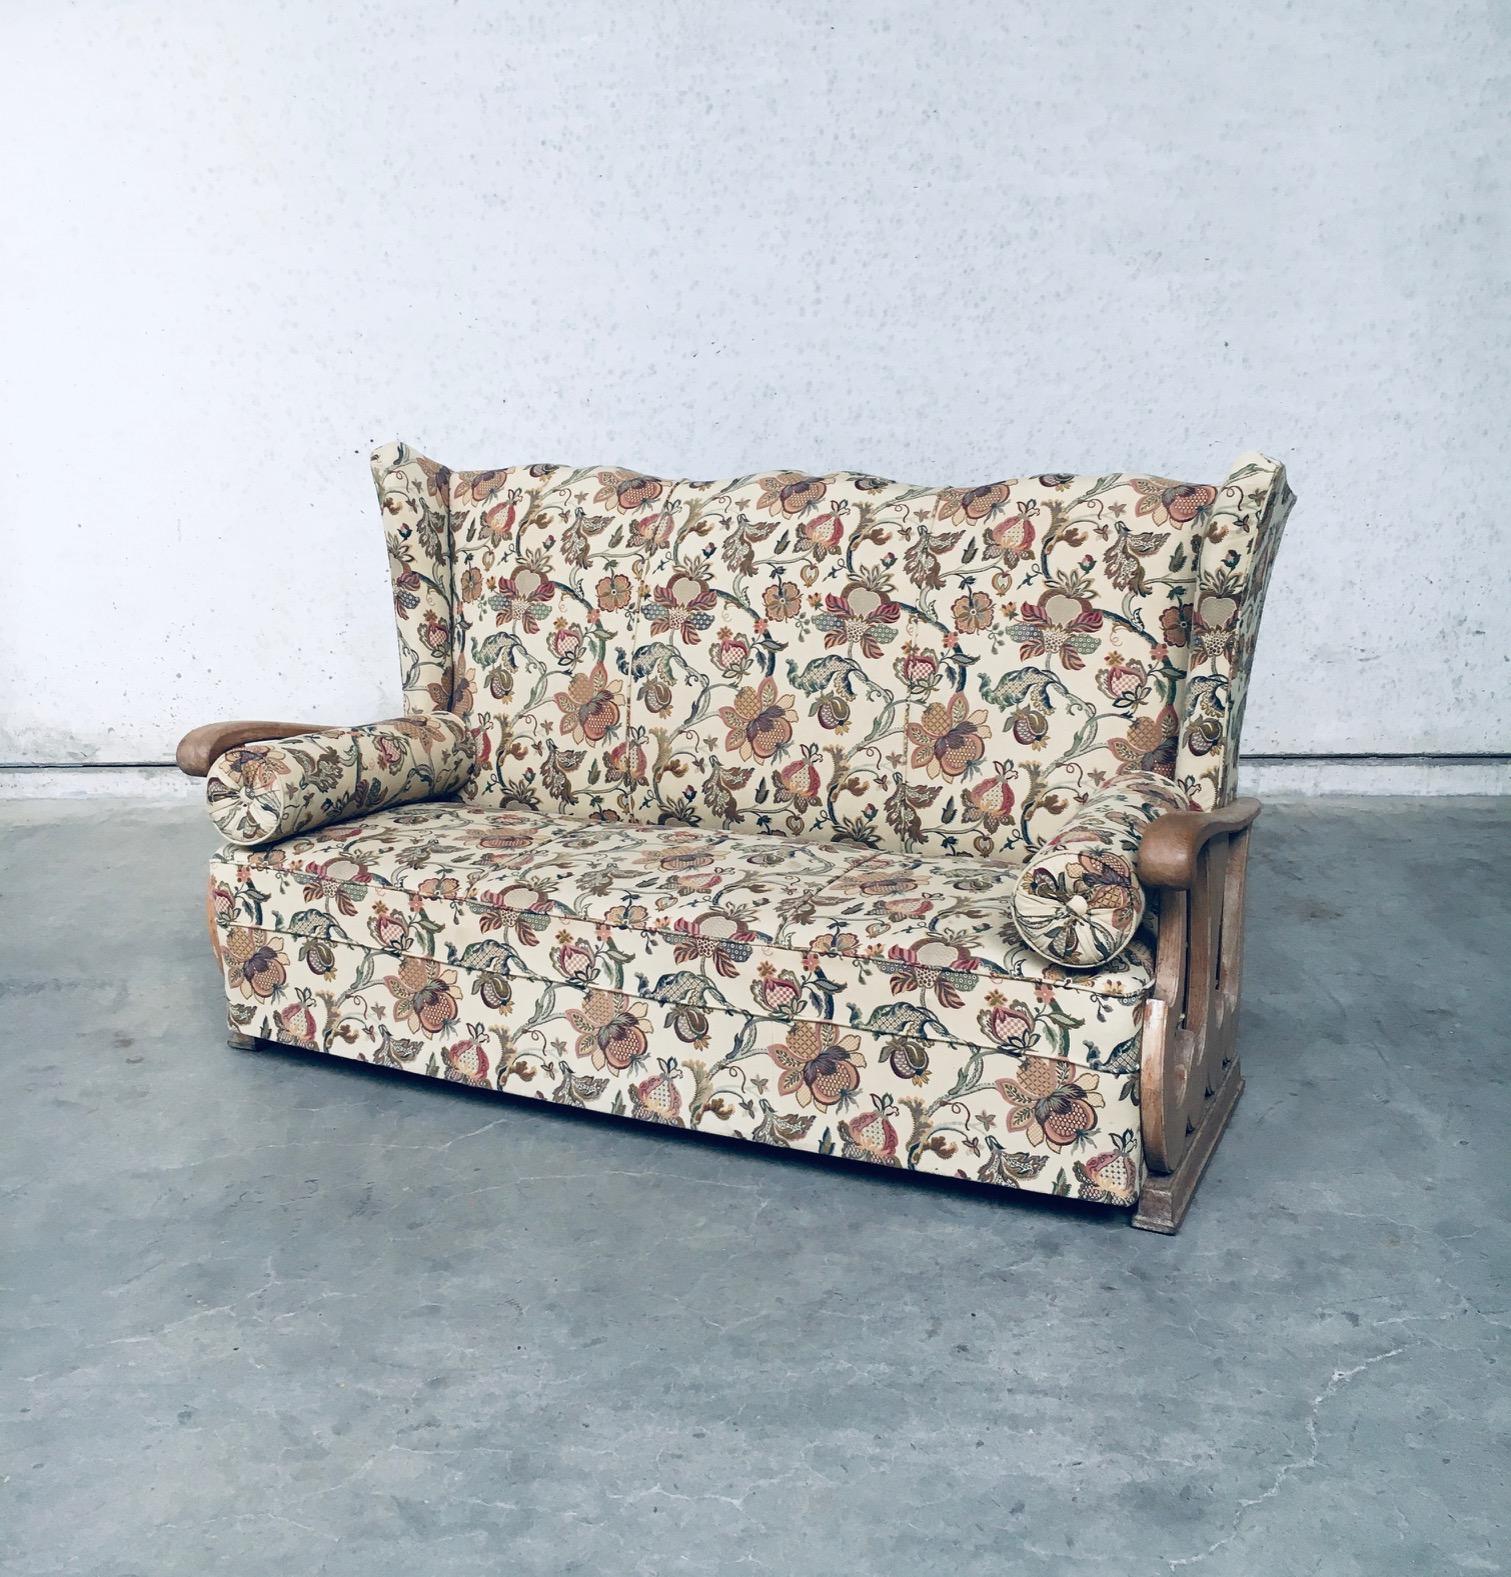 Original frühen 1900's Design High Wing Back 3 Seat Sofa. Hergestellt in Frankreich, 1920er - 1930er Jahre. Sofa mit hoher Rückenlehne und geschnitzten Armlehnen aus Eichenholz, kürzlich neu gepolstert mit einem Stoff mit Blumendruck. Es stammt vom